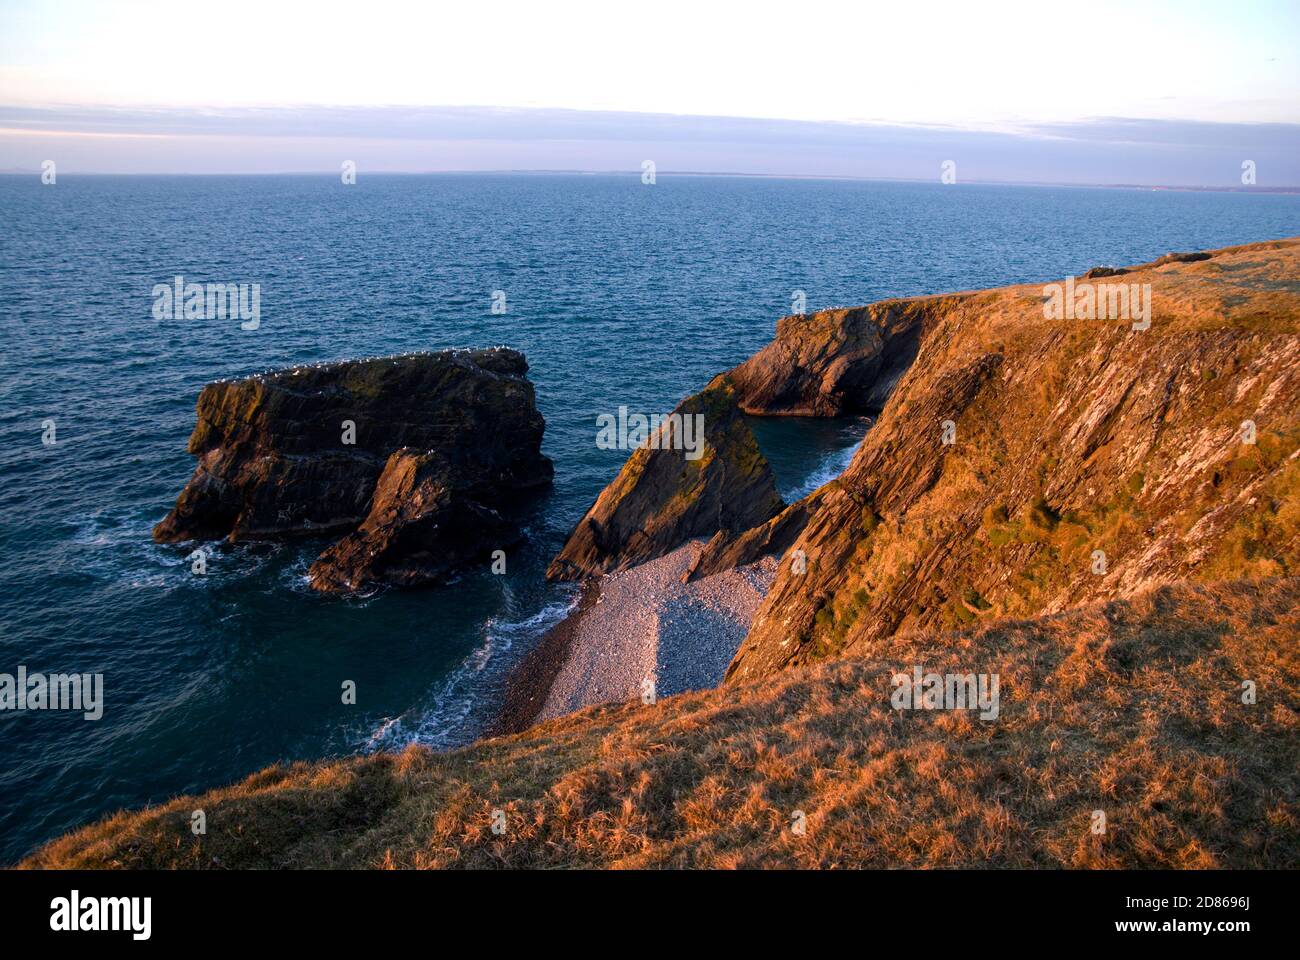 Ynys Fawr Island from the Llyn Coastal Footpath, Morfa, Trefor, Lleyn Peninsula, Caernarfon, Gwynedd, North Wales. Stock Photo